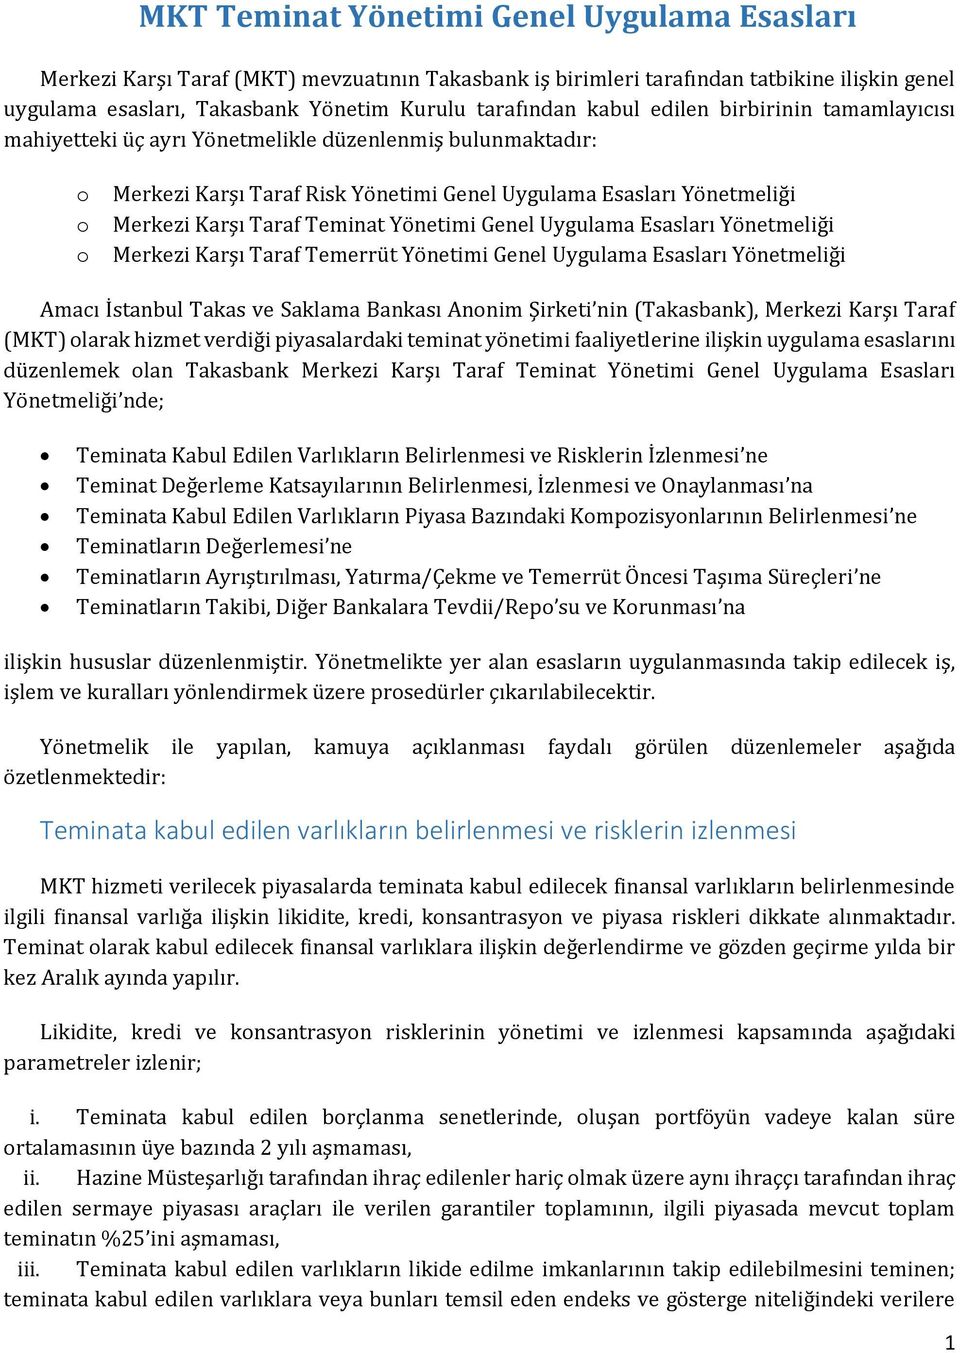 Teminat Yönetimi Genel Uygulama Esasları Yönetmeliği Merkezi Karşı Taraf Temerrüt Yönetimi Genel Uygulama Esasları Yönetmeliği Amacı İstanbul Takas ve Saklama Bankası Anonim Şirketi nin (Takasbank),